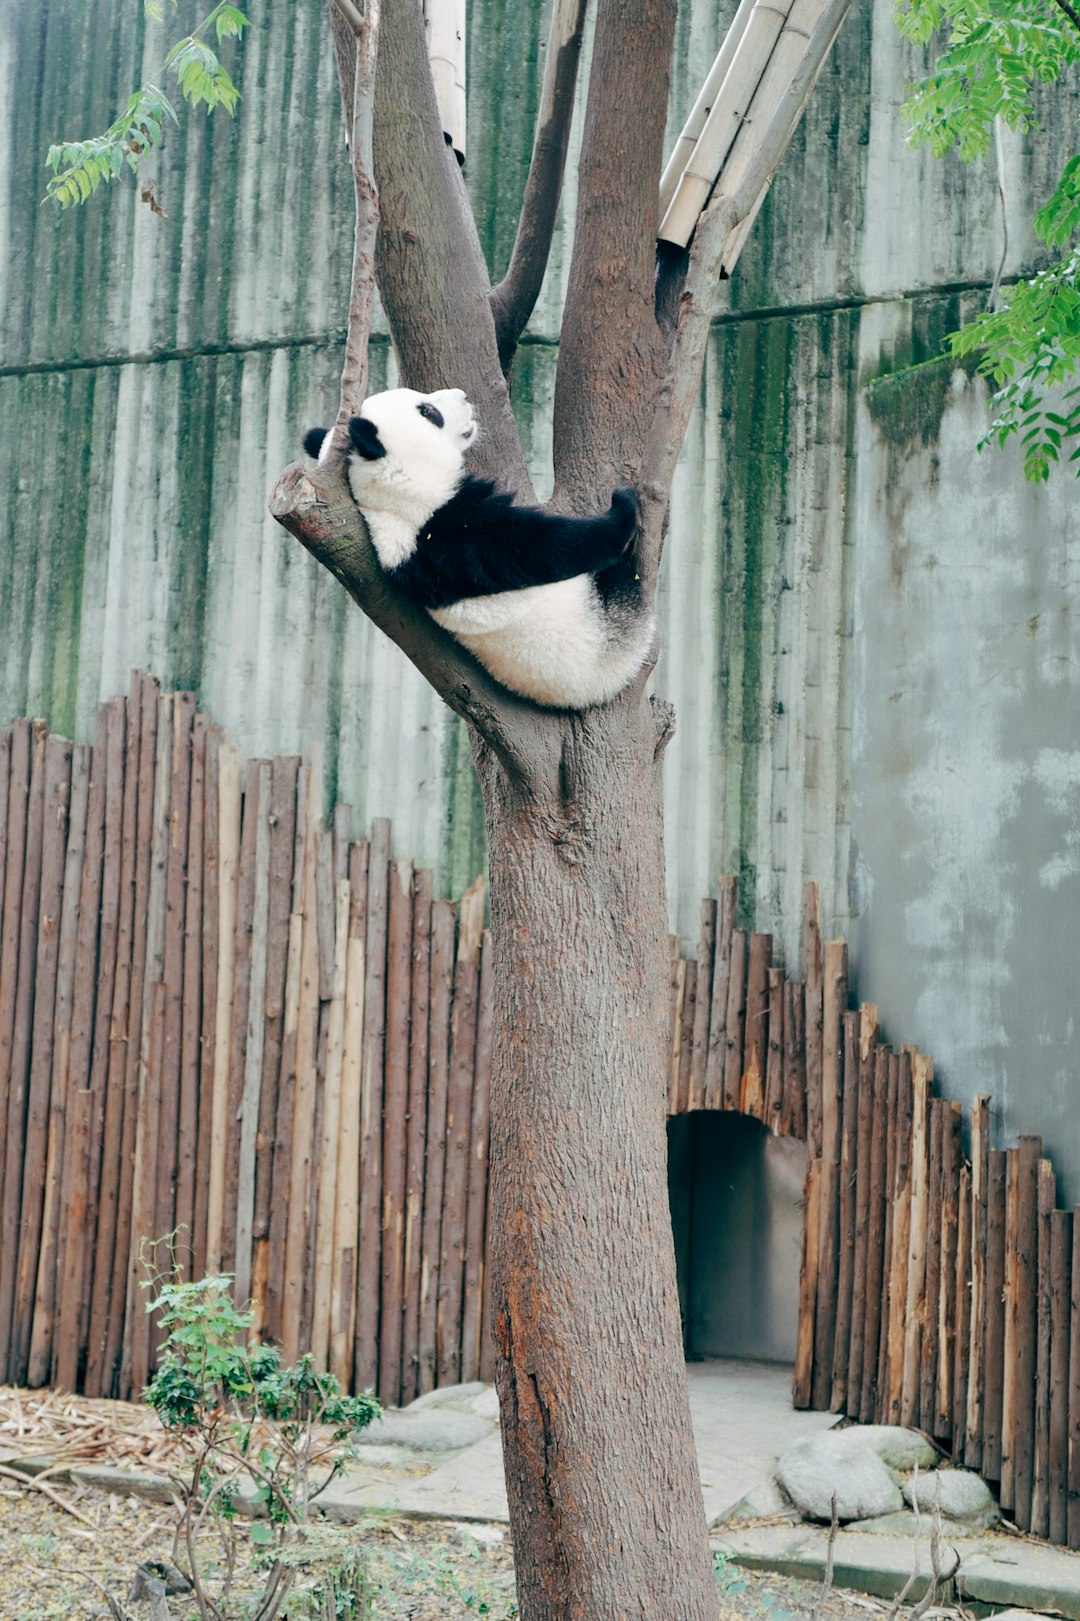  panda bear on tree trunk panda